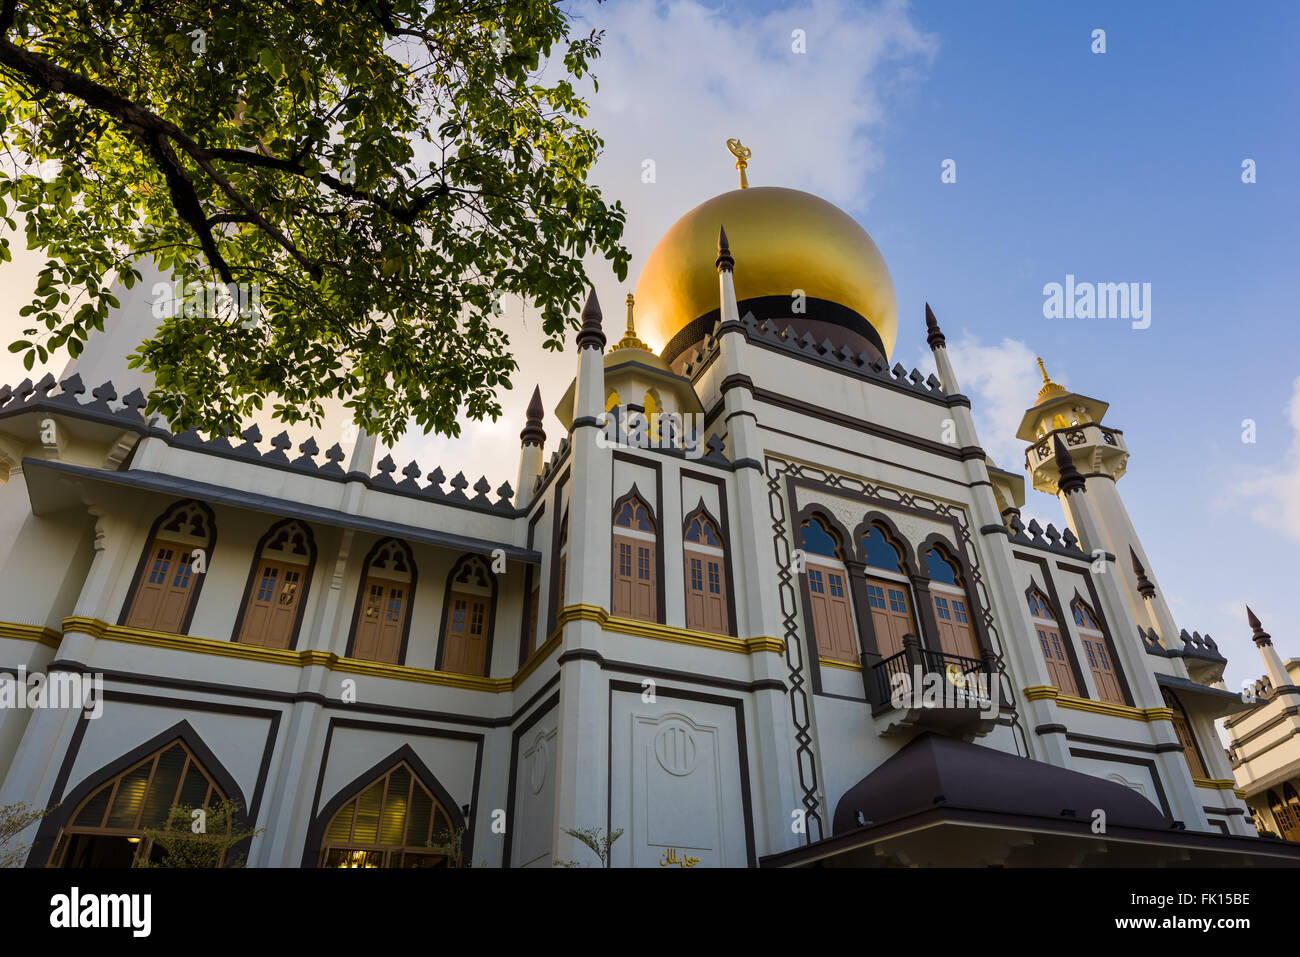 Singapour, 01 mars 2016 : Majestic mosquée musulmane au coucher du soleil. Banque D'Images